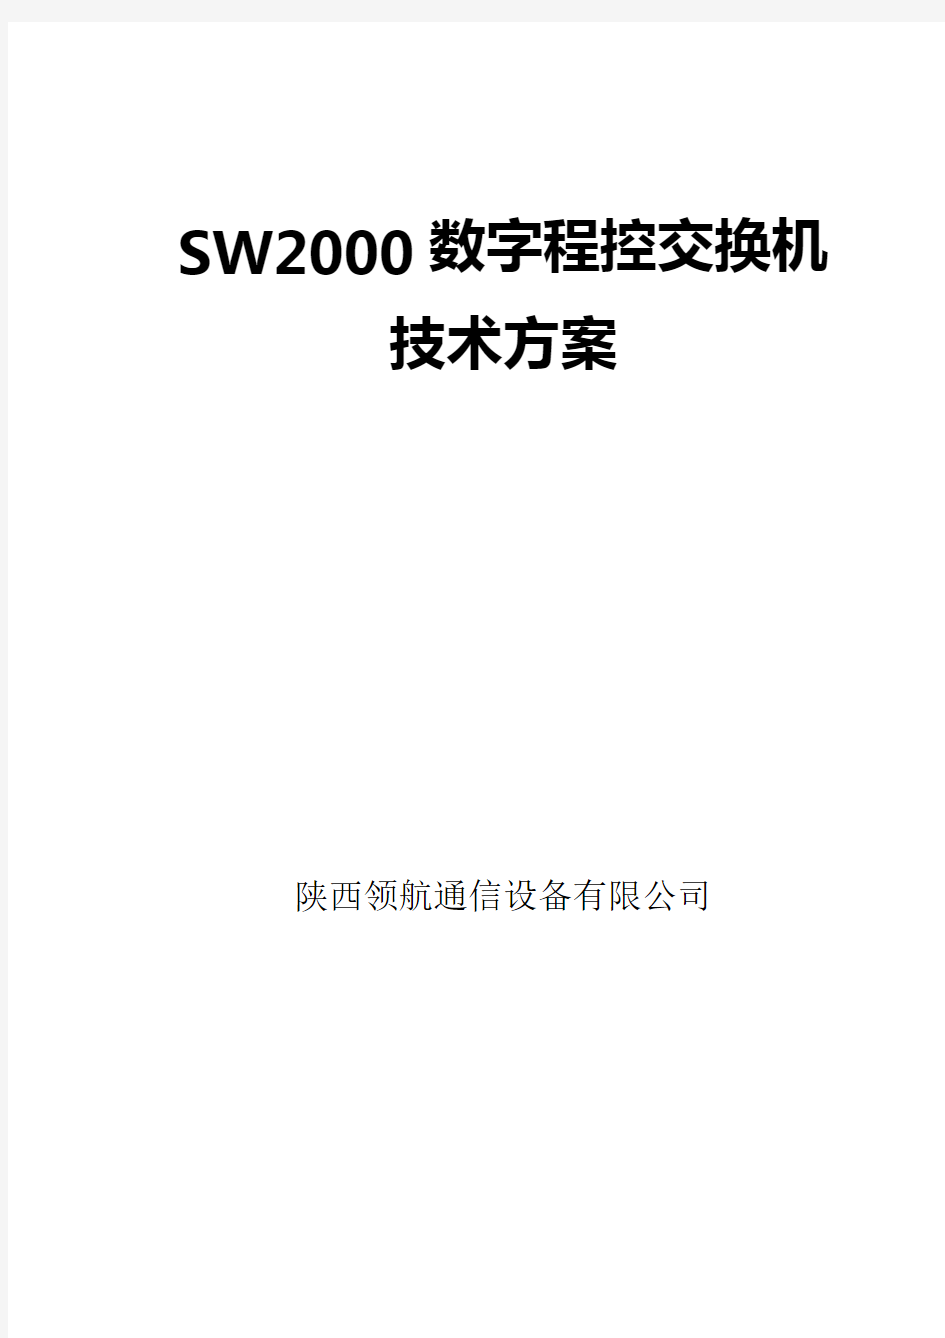 上海沪光SW数字程控交换机技术方案